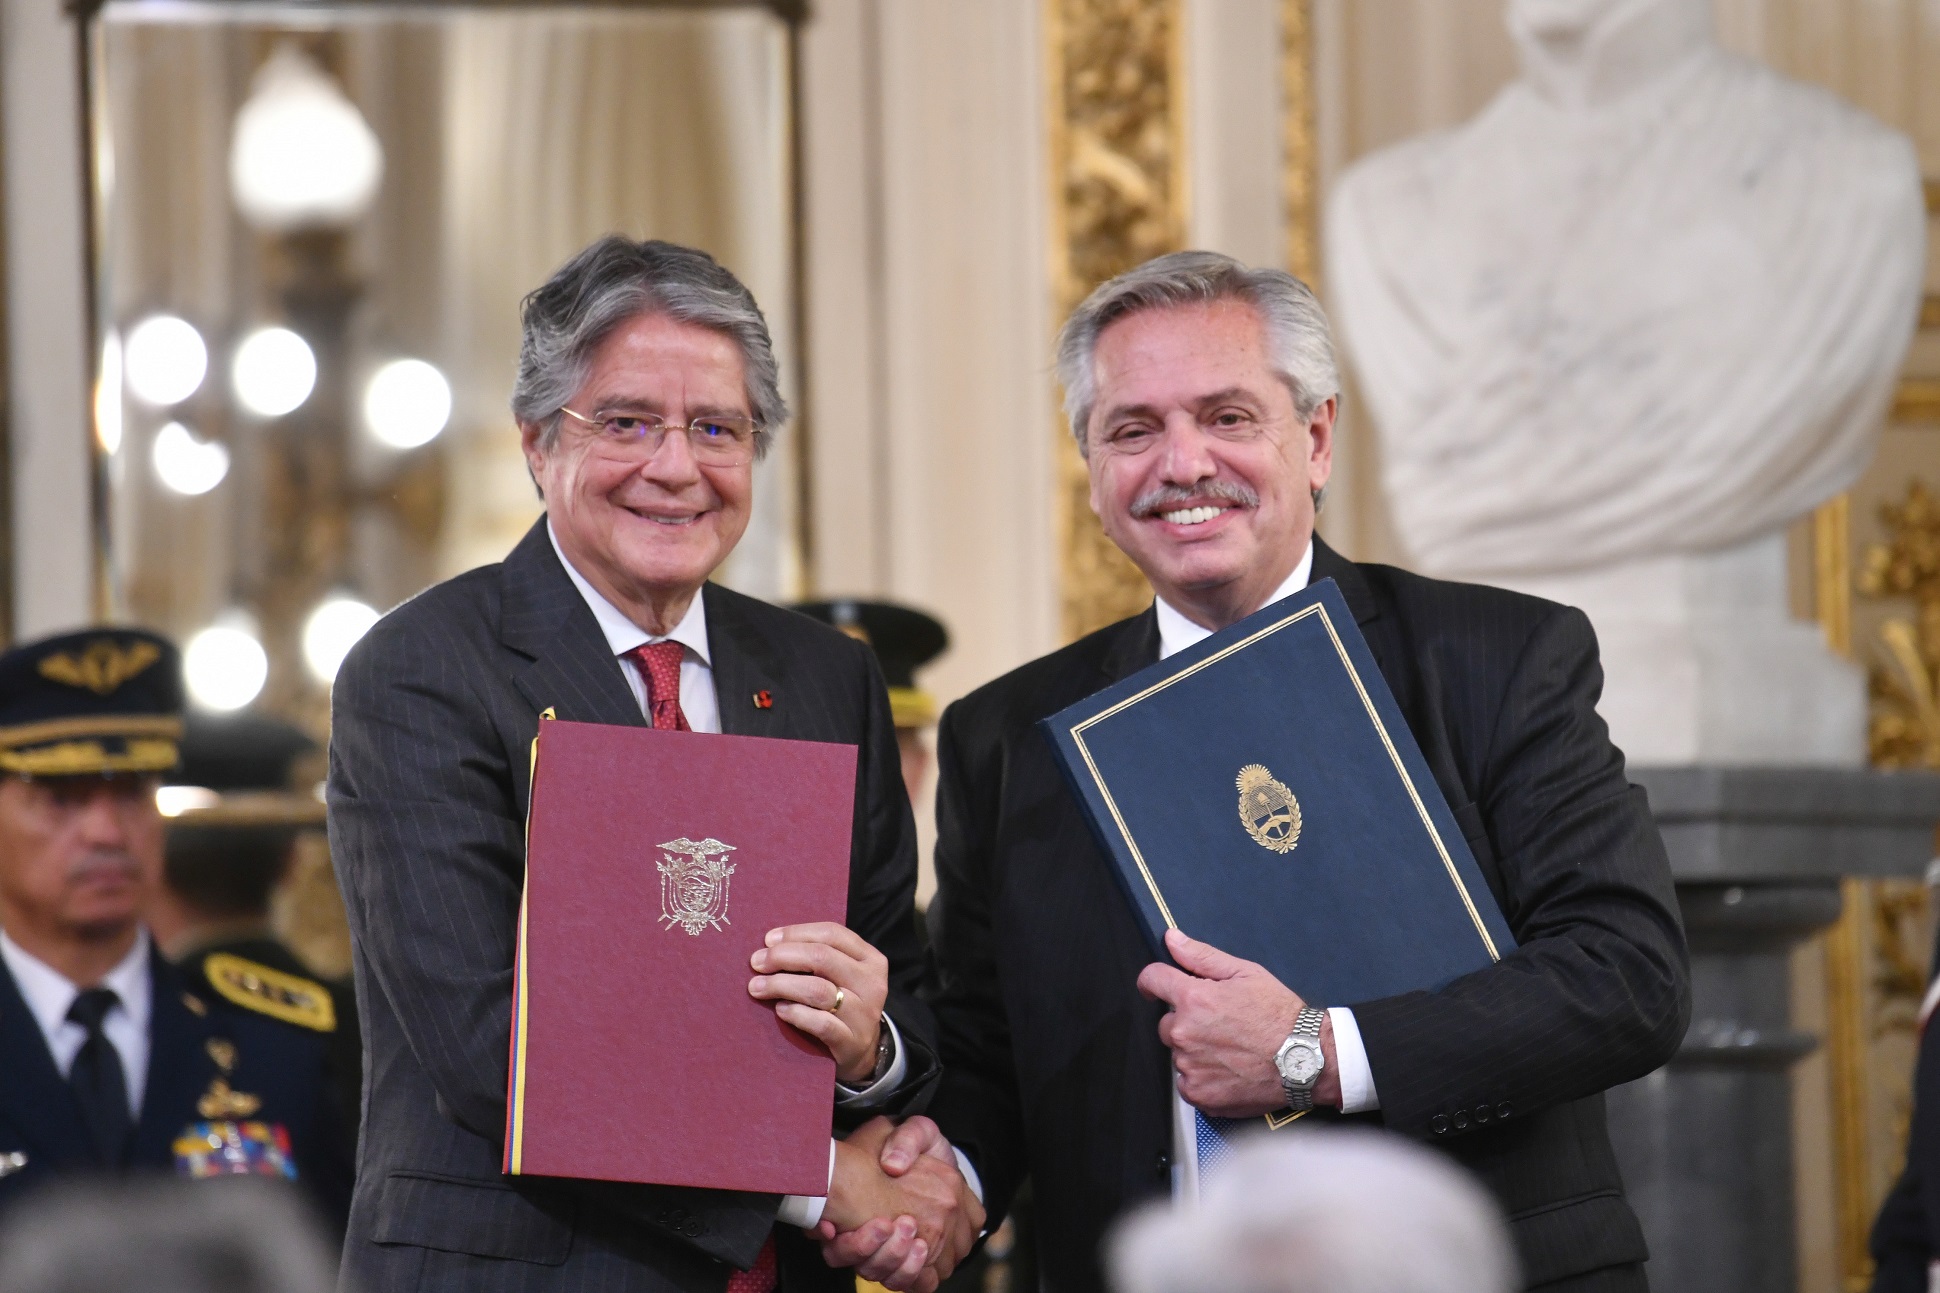 Los presidentes Fernández y Lasso acordaron lanzar un “programa de fraternidad en América Latina y el Caribe” a través de la CELAC